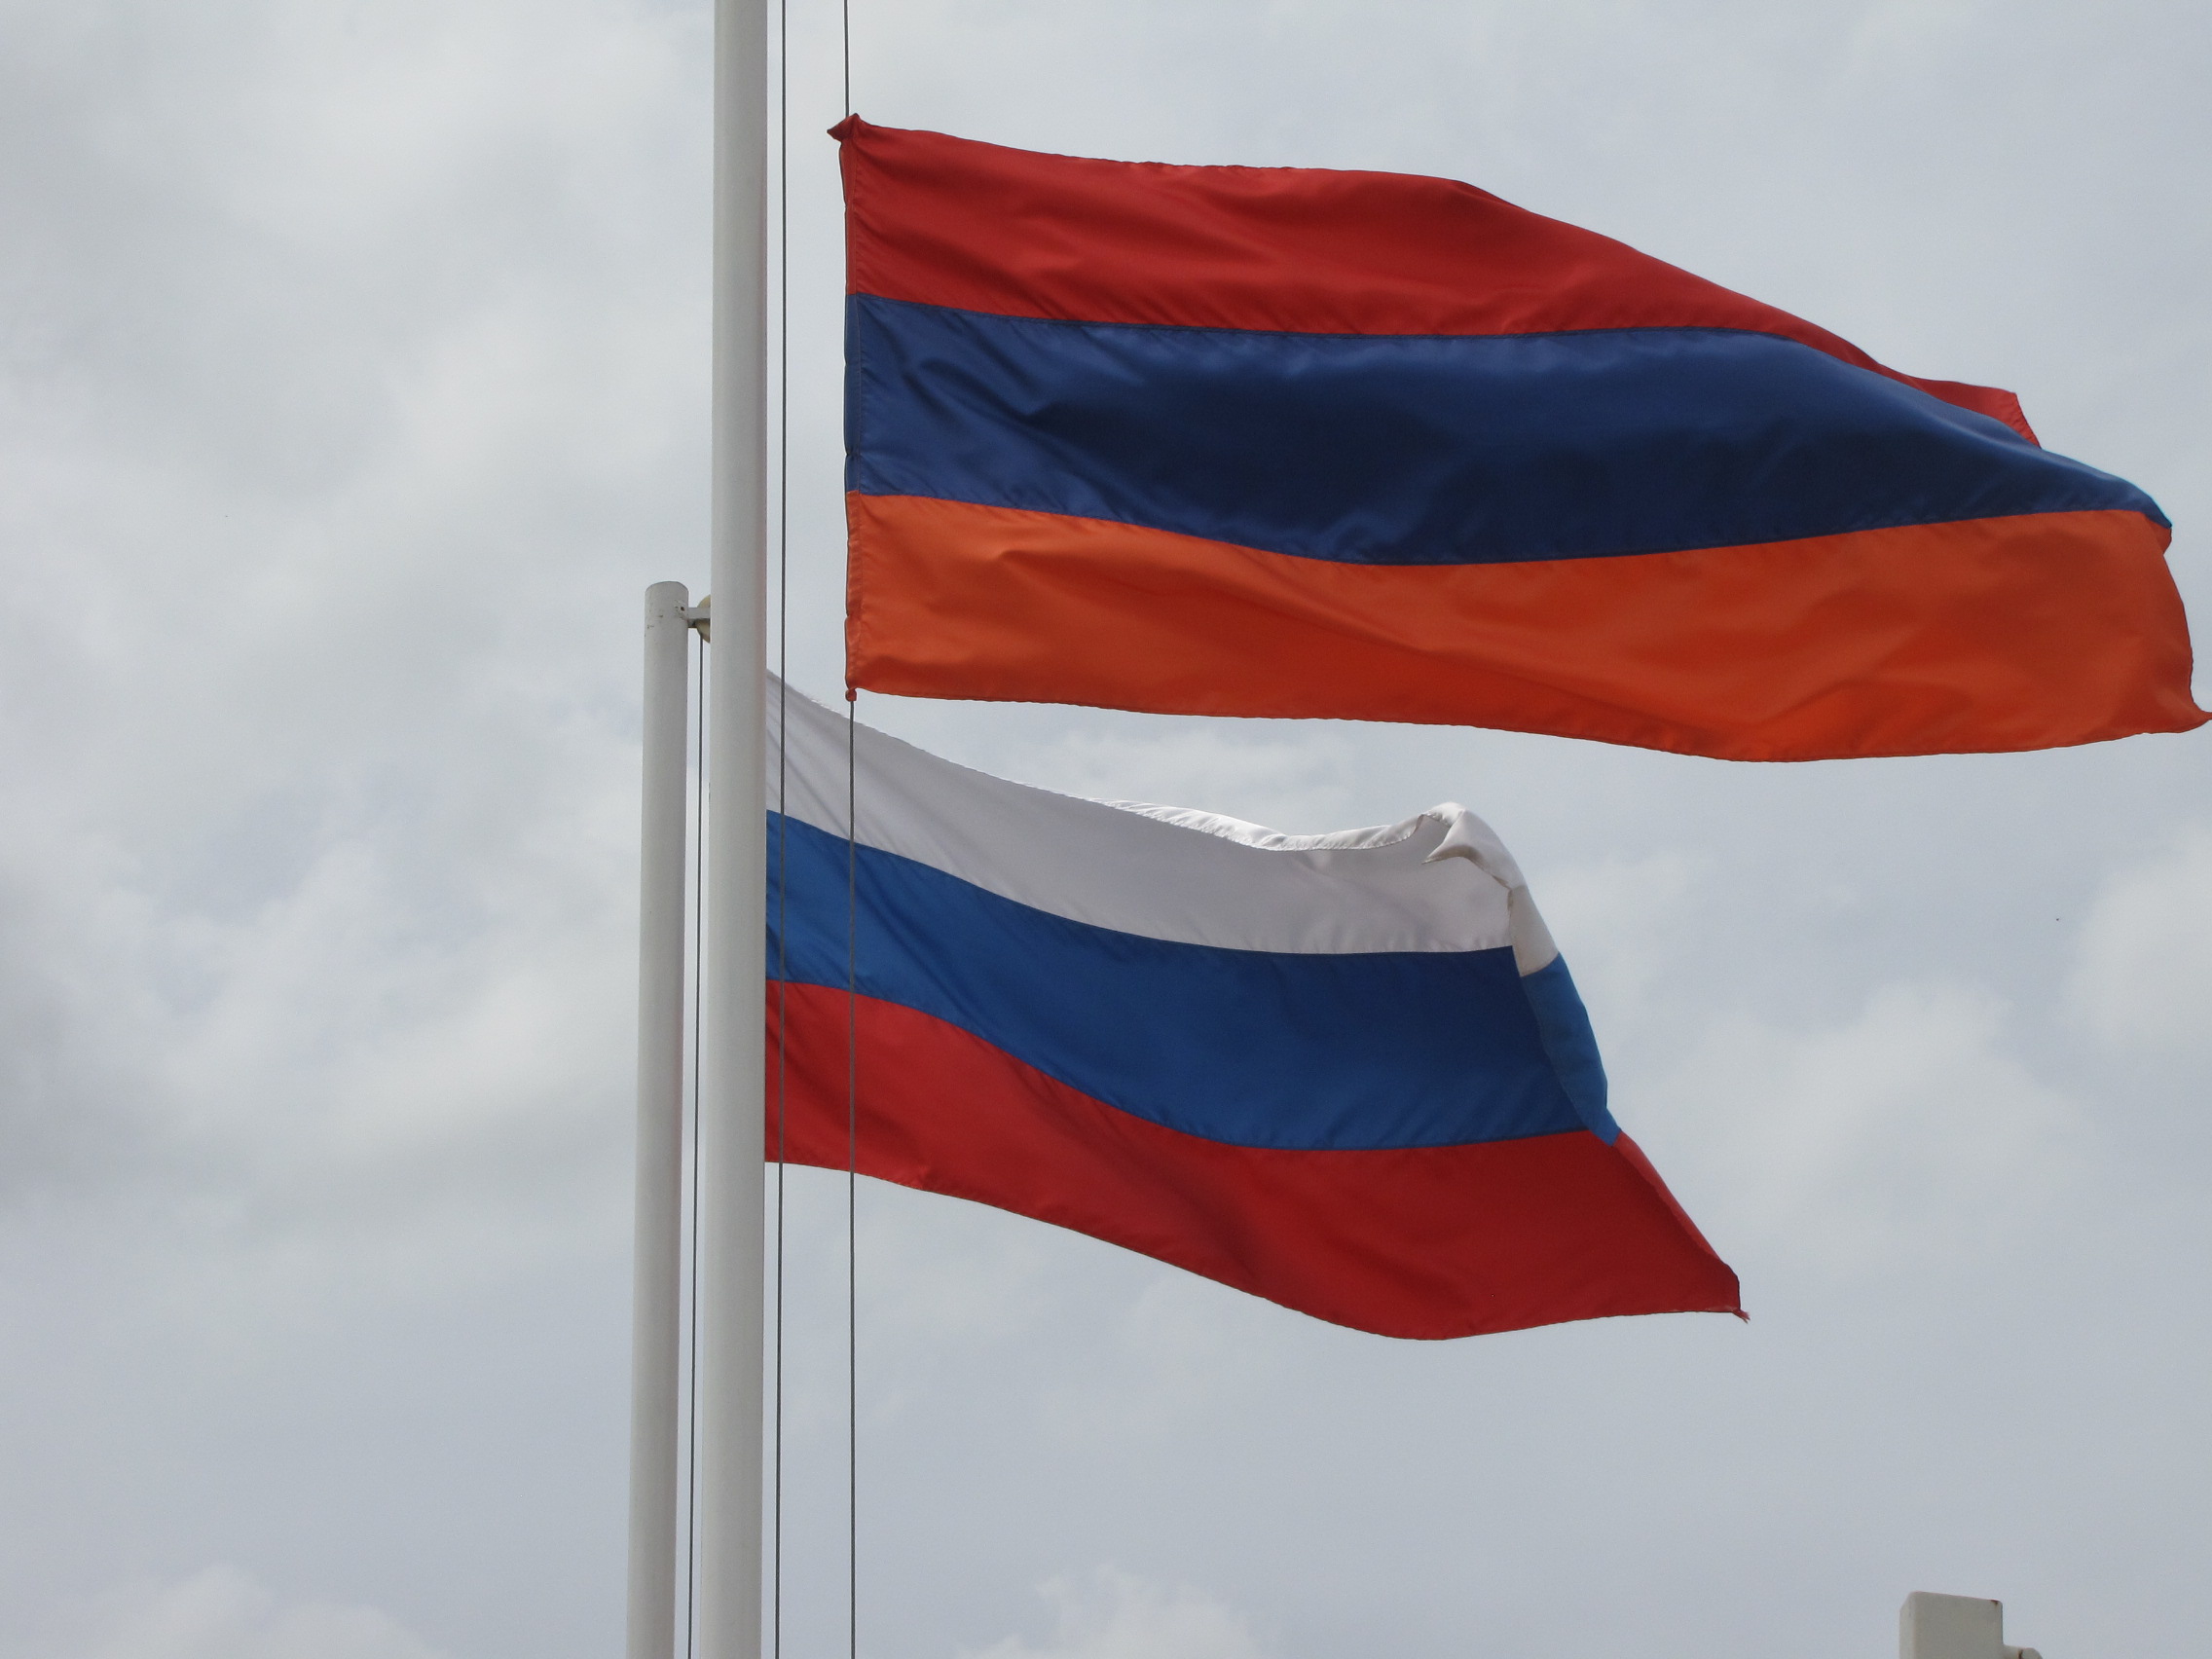 Հայաստանը պետք է կնքի նոր անվտանգային բնույթի պայմանագիր Ռուսաստանի հետ. Մարուքյան